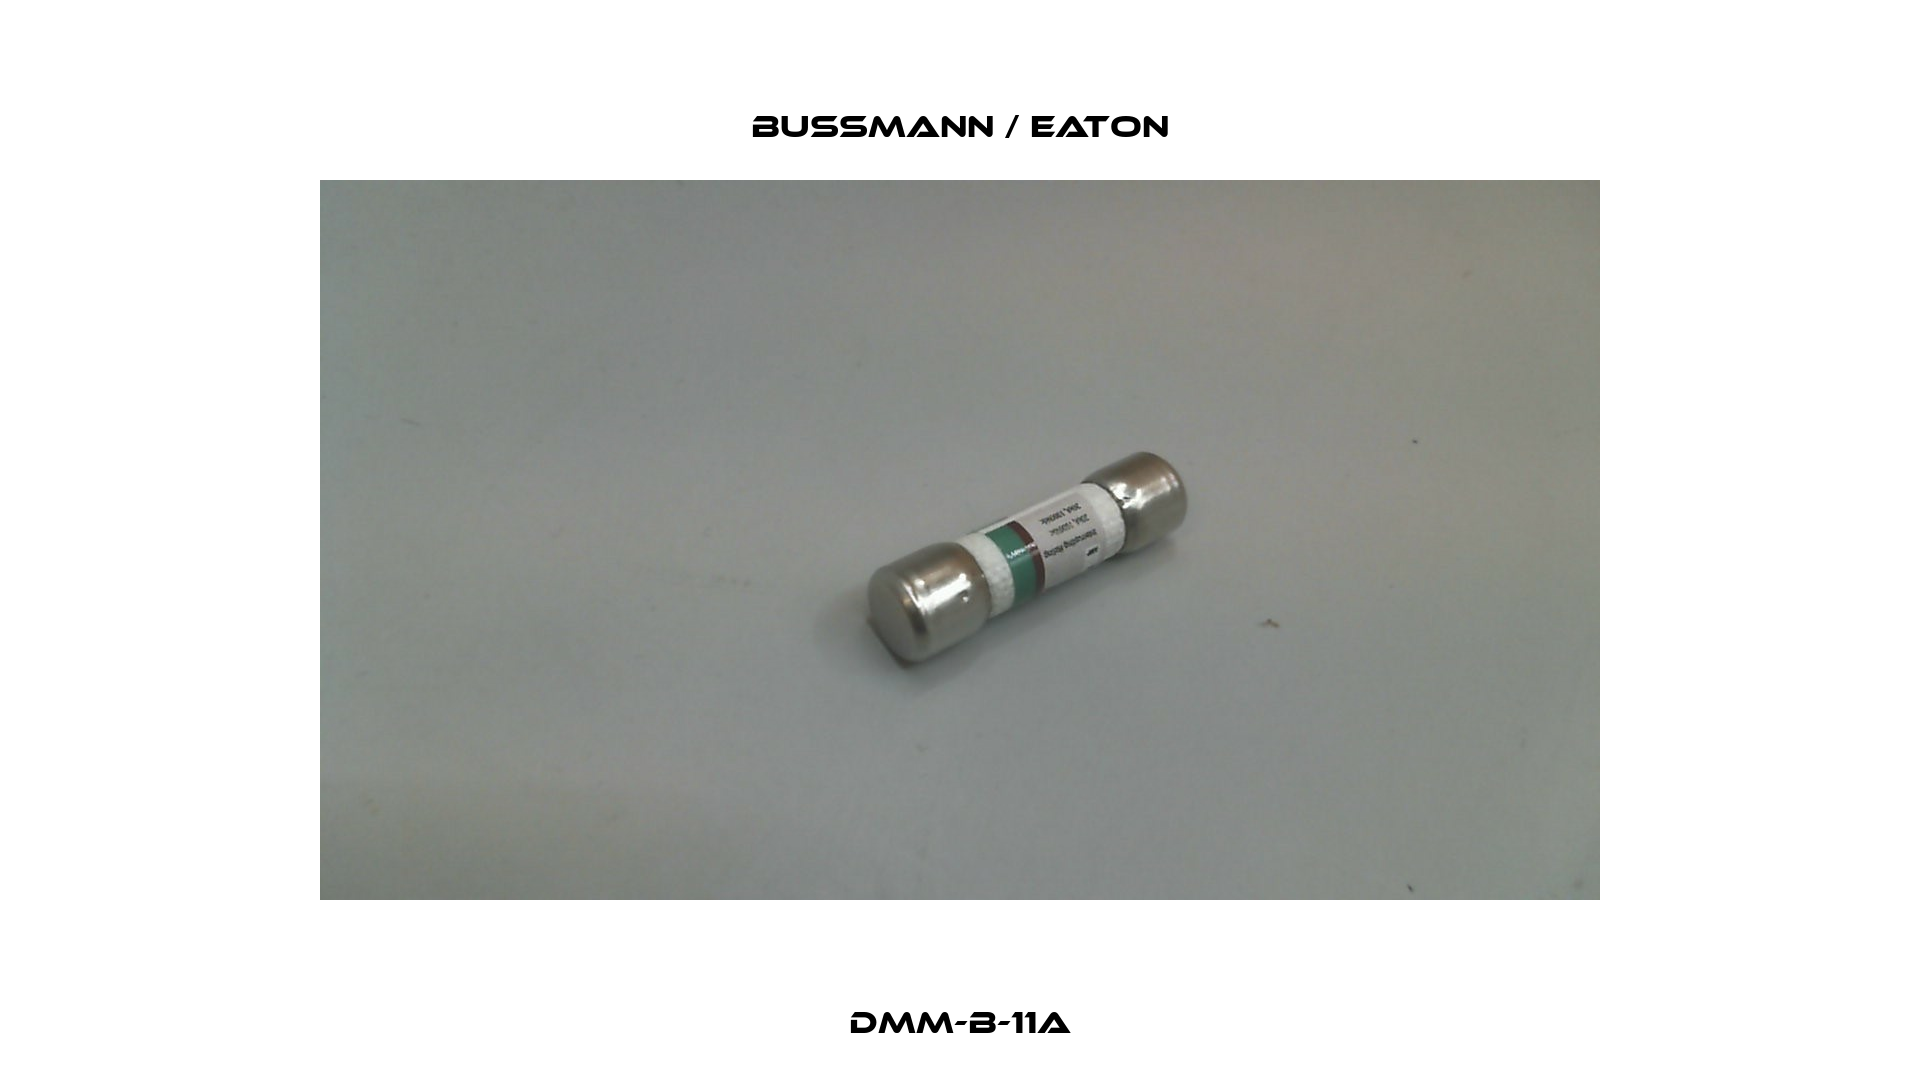 DMM-B-11A BUSSMANN / EATON